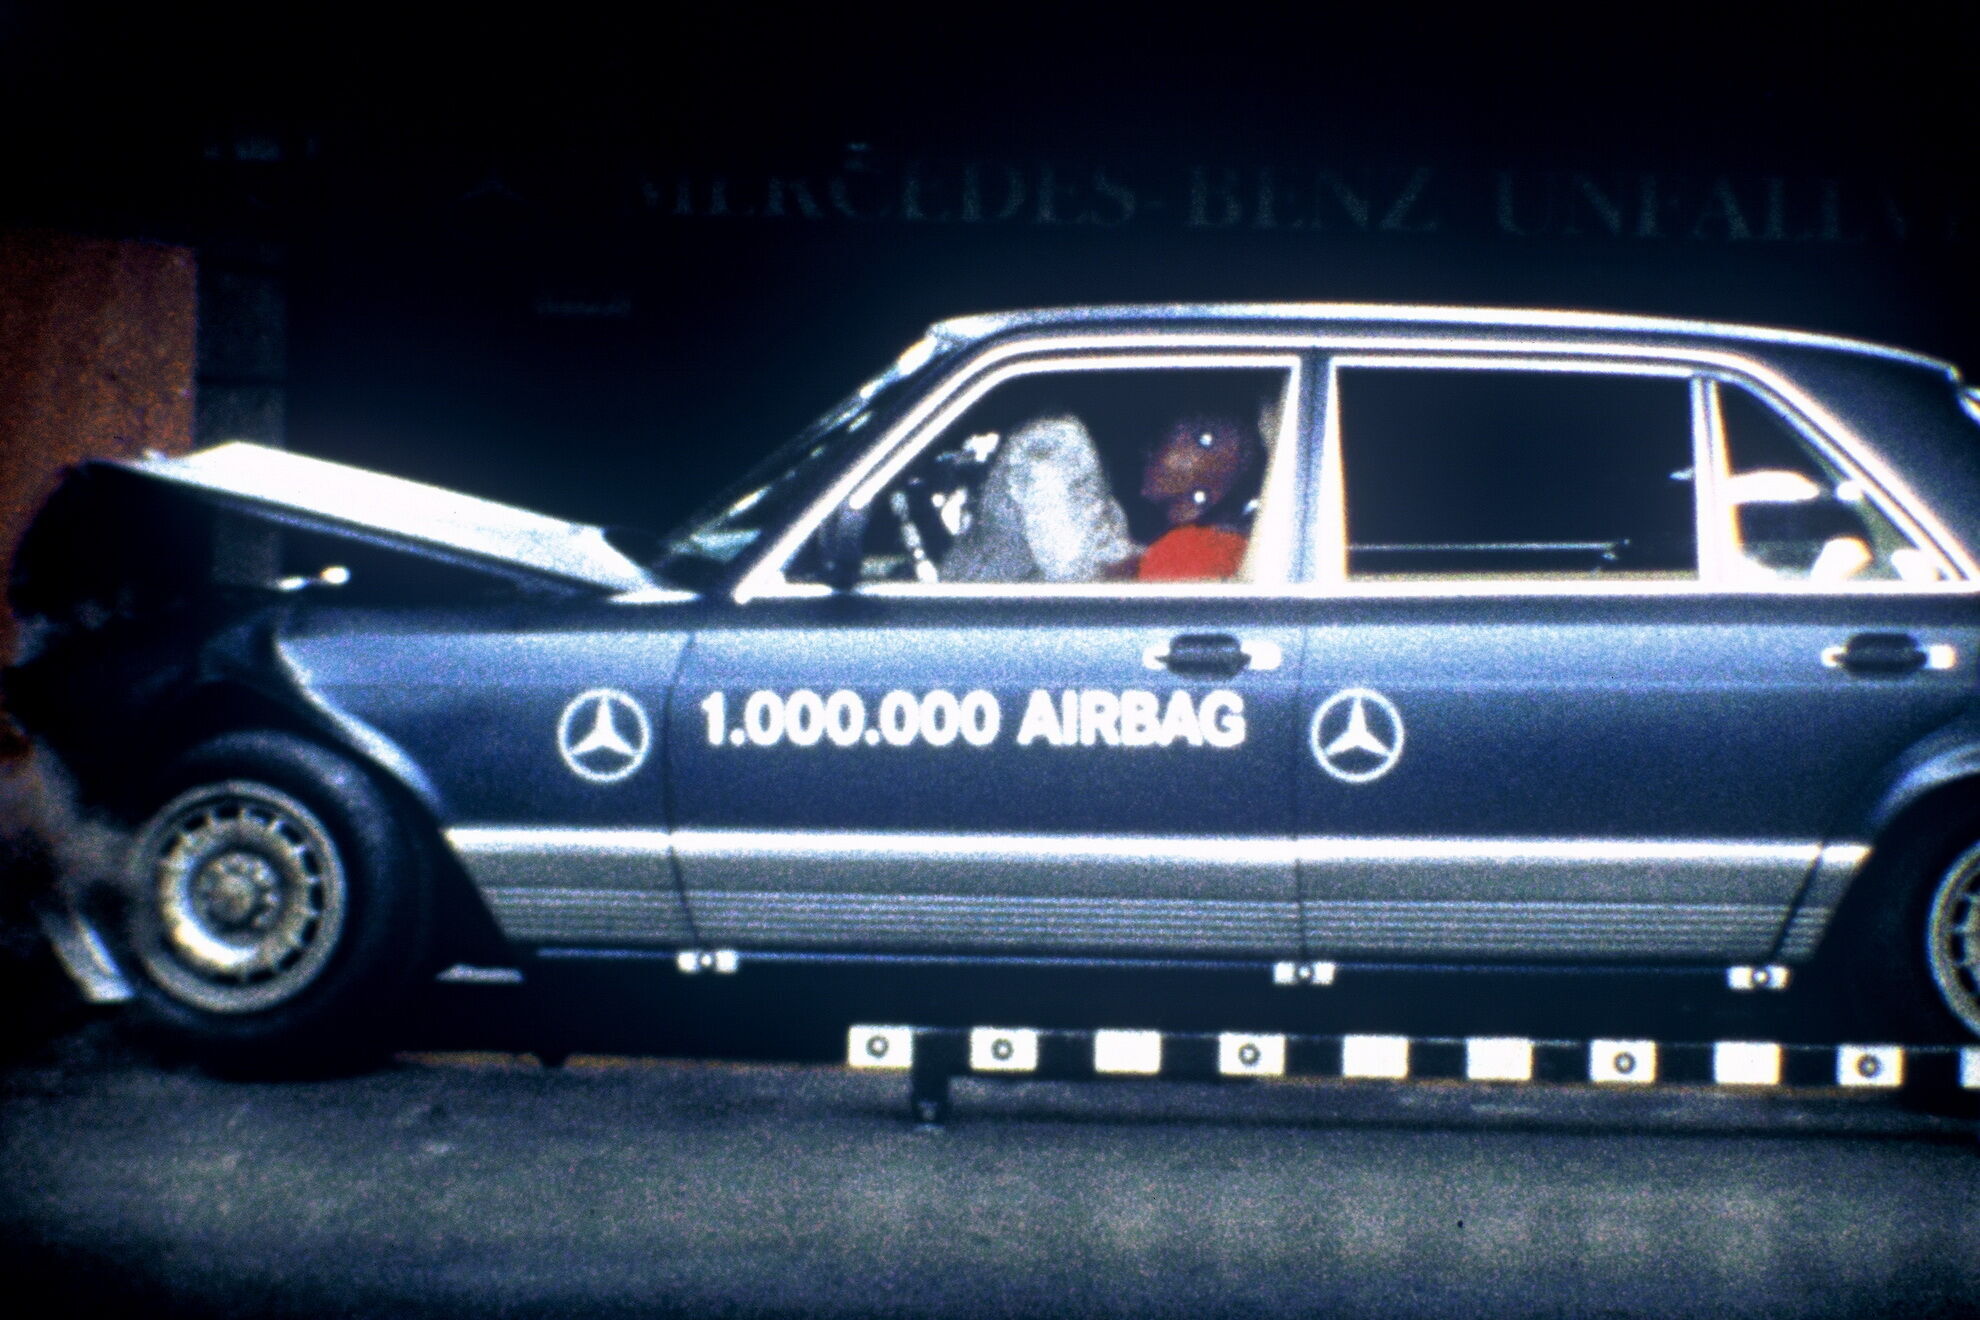 Краш-тест Mercedes-Benz 500 SEL 1981 года выпуска был проведен в июле 1992 года в честь выпуска миллионного автомобиля с подушками безопасности. Краш-тест продемонстрировал, что даже спустя 11 лет подушка идеально справляется со своими функциями.